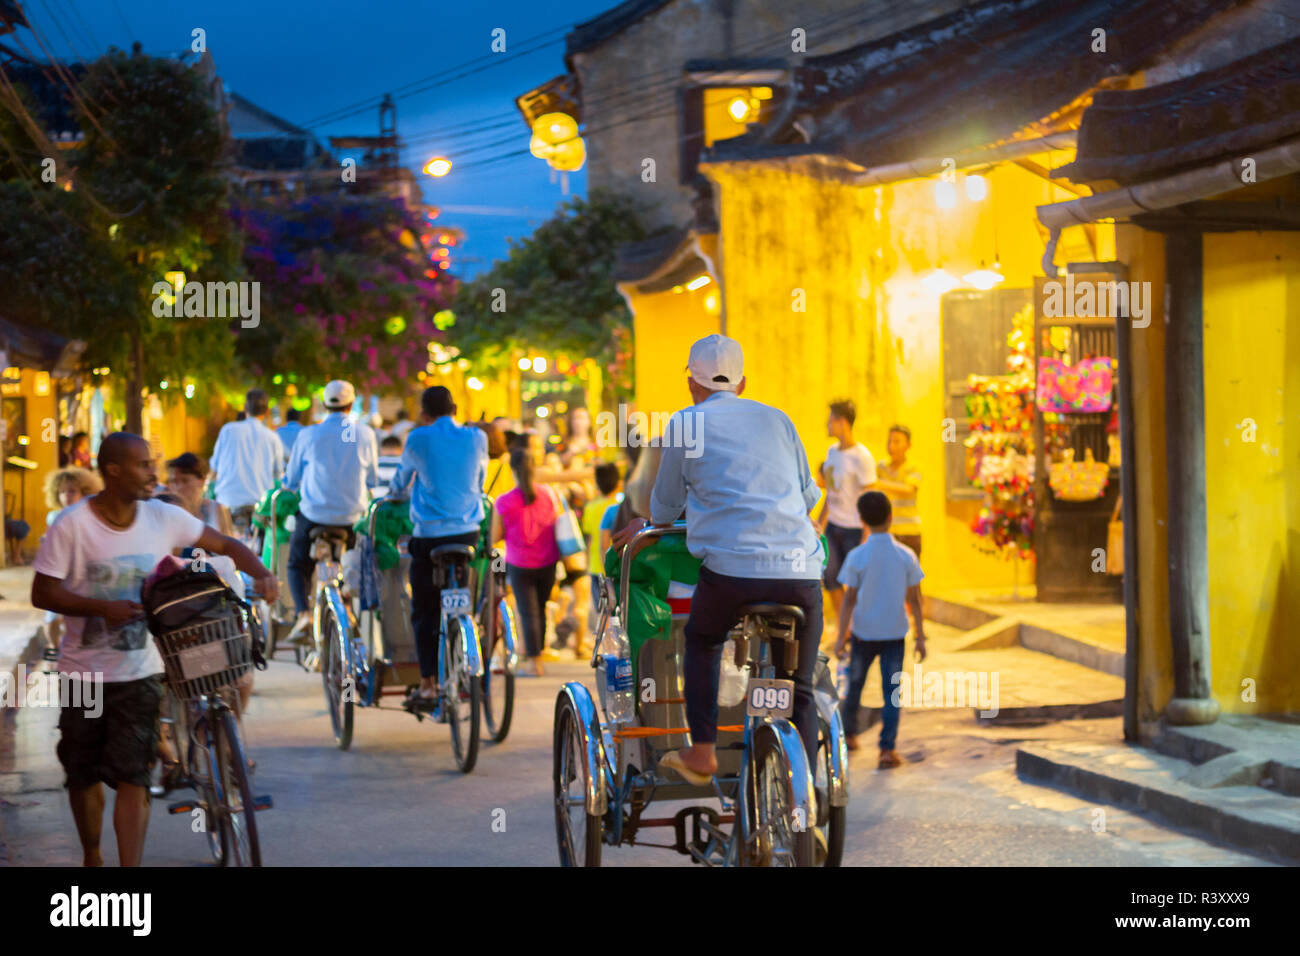 trishaws cycle rickshaws riding tourists around Hoi An Ancient Town. Stock Photo